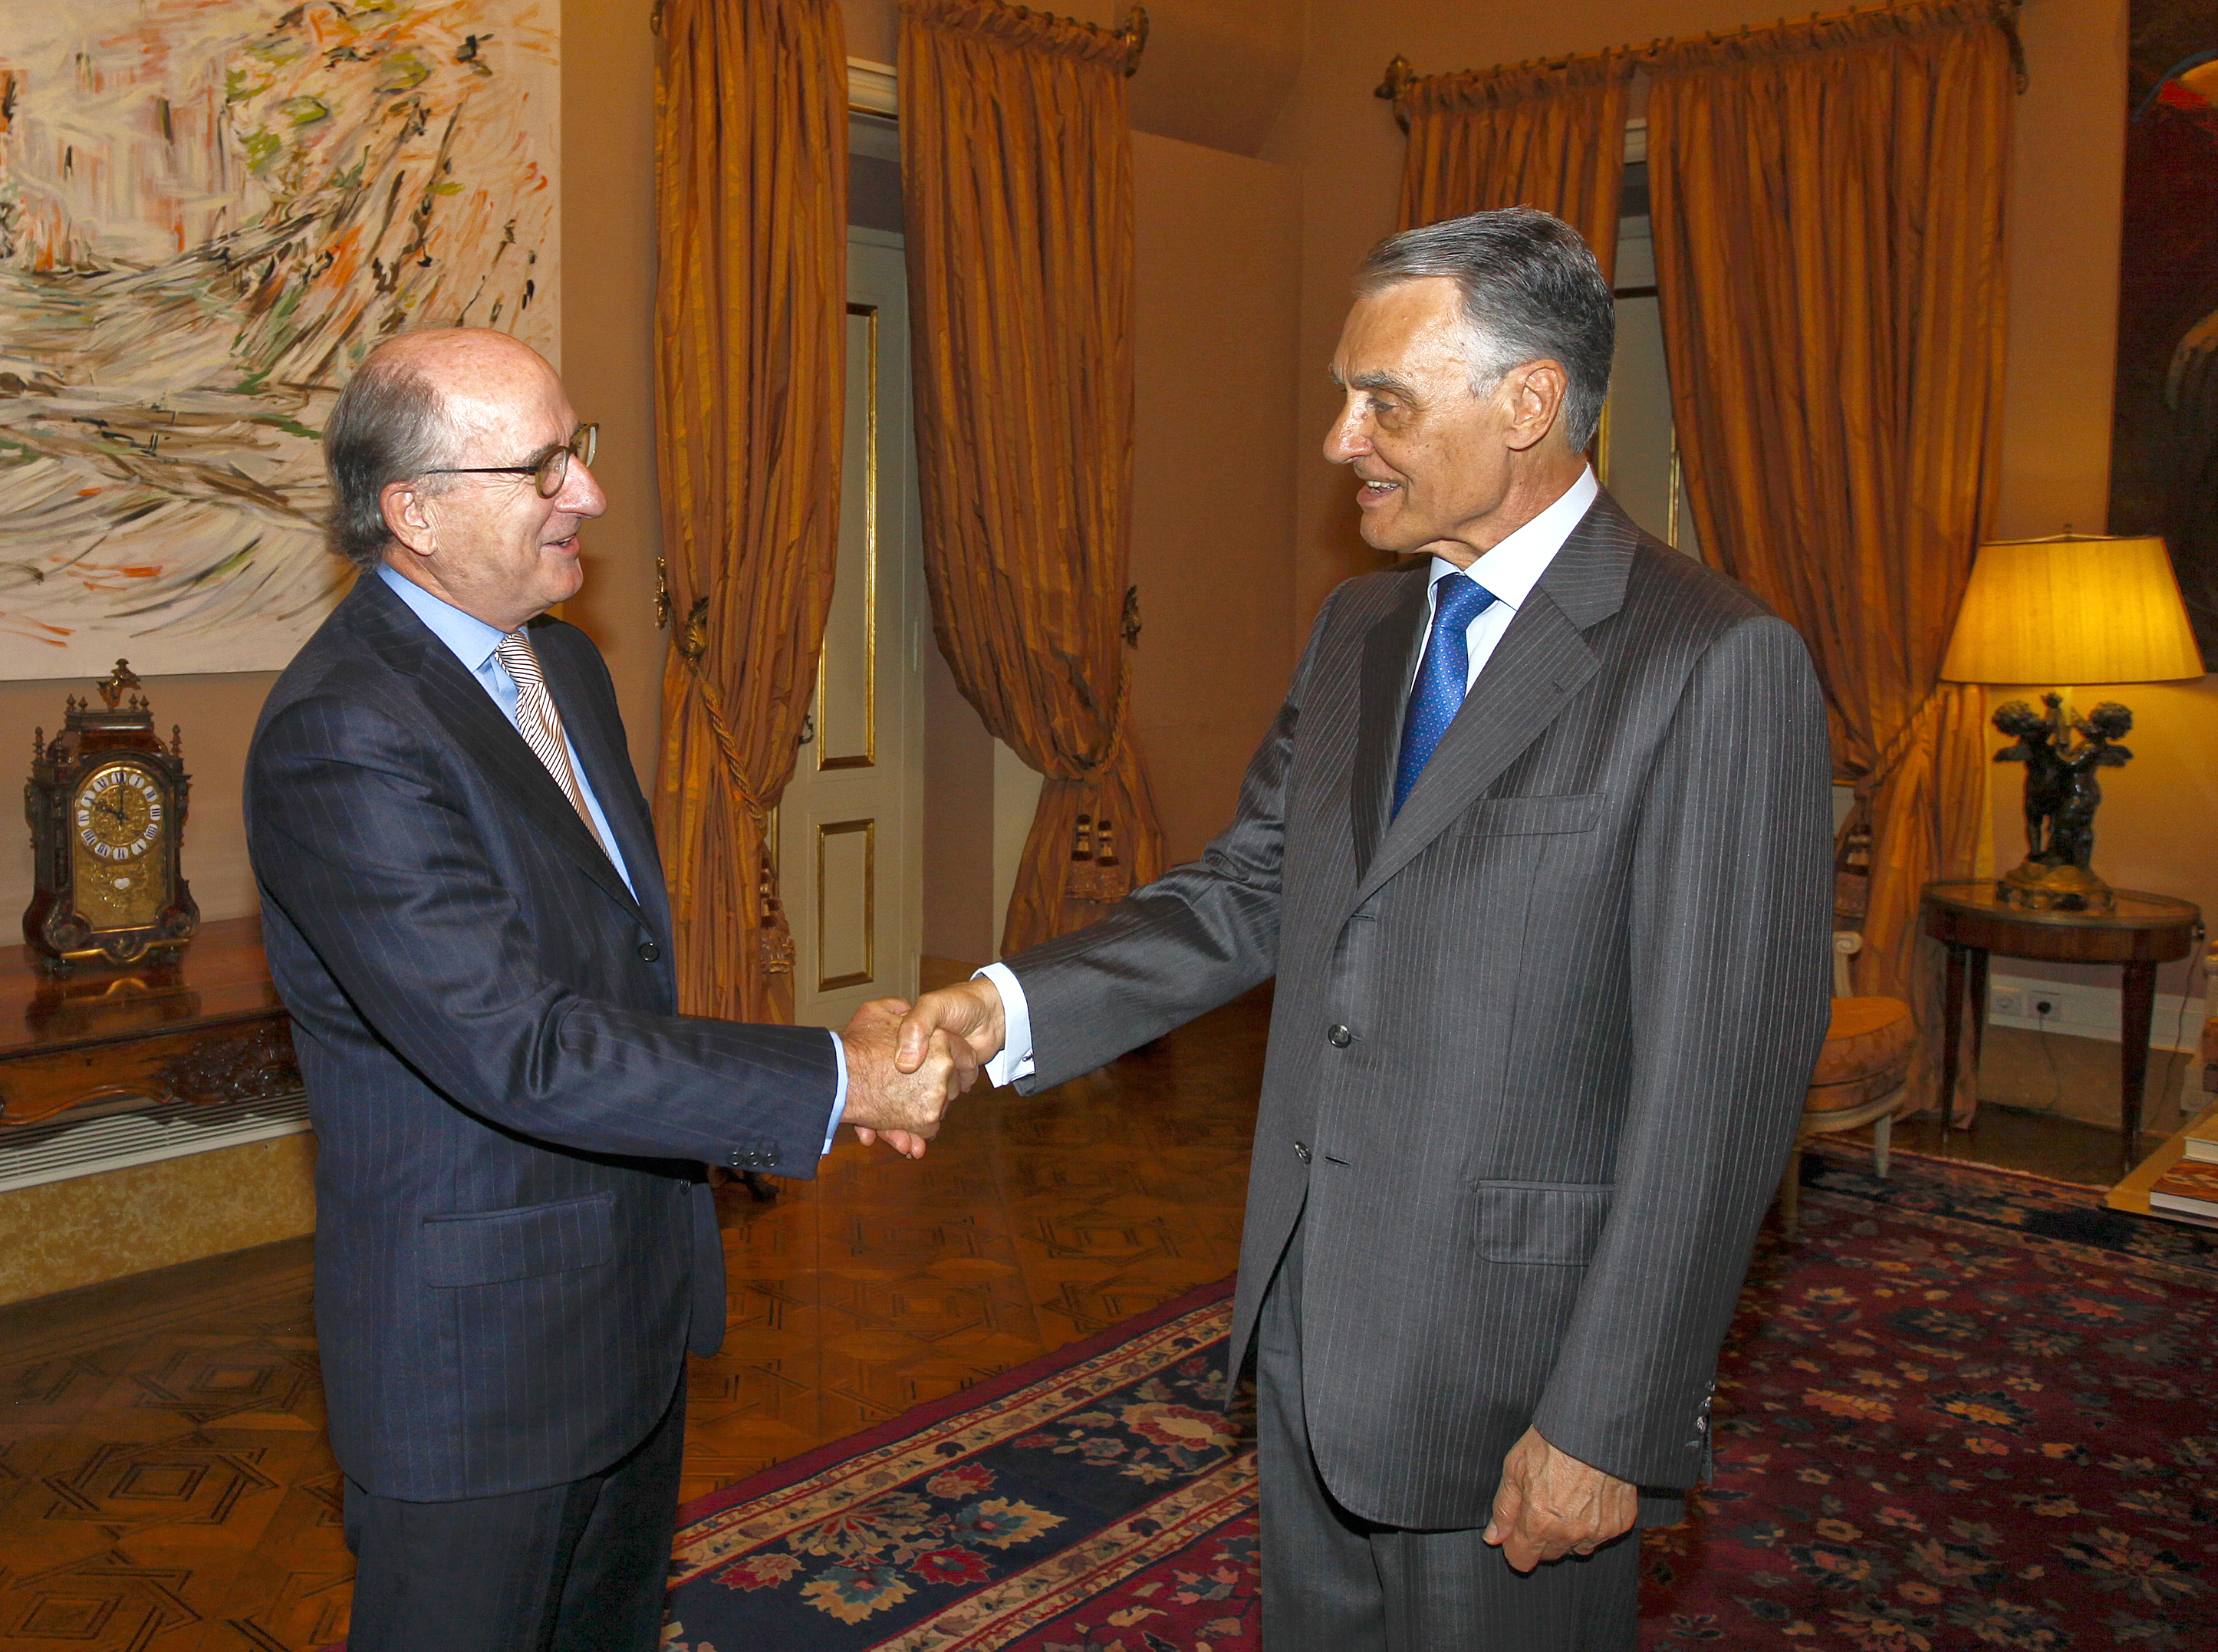 Antonio Brufau saluda al presidente de Portugal, Aníbal Cavaco Silva. FOTO: Repsol